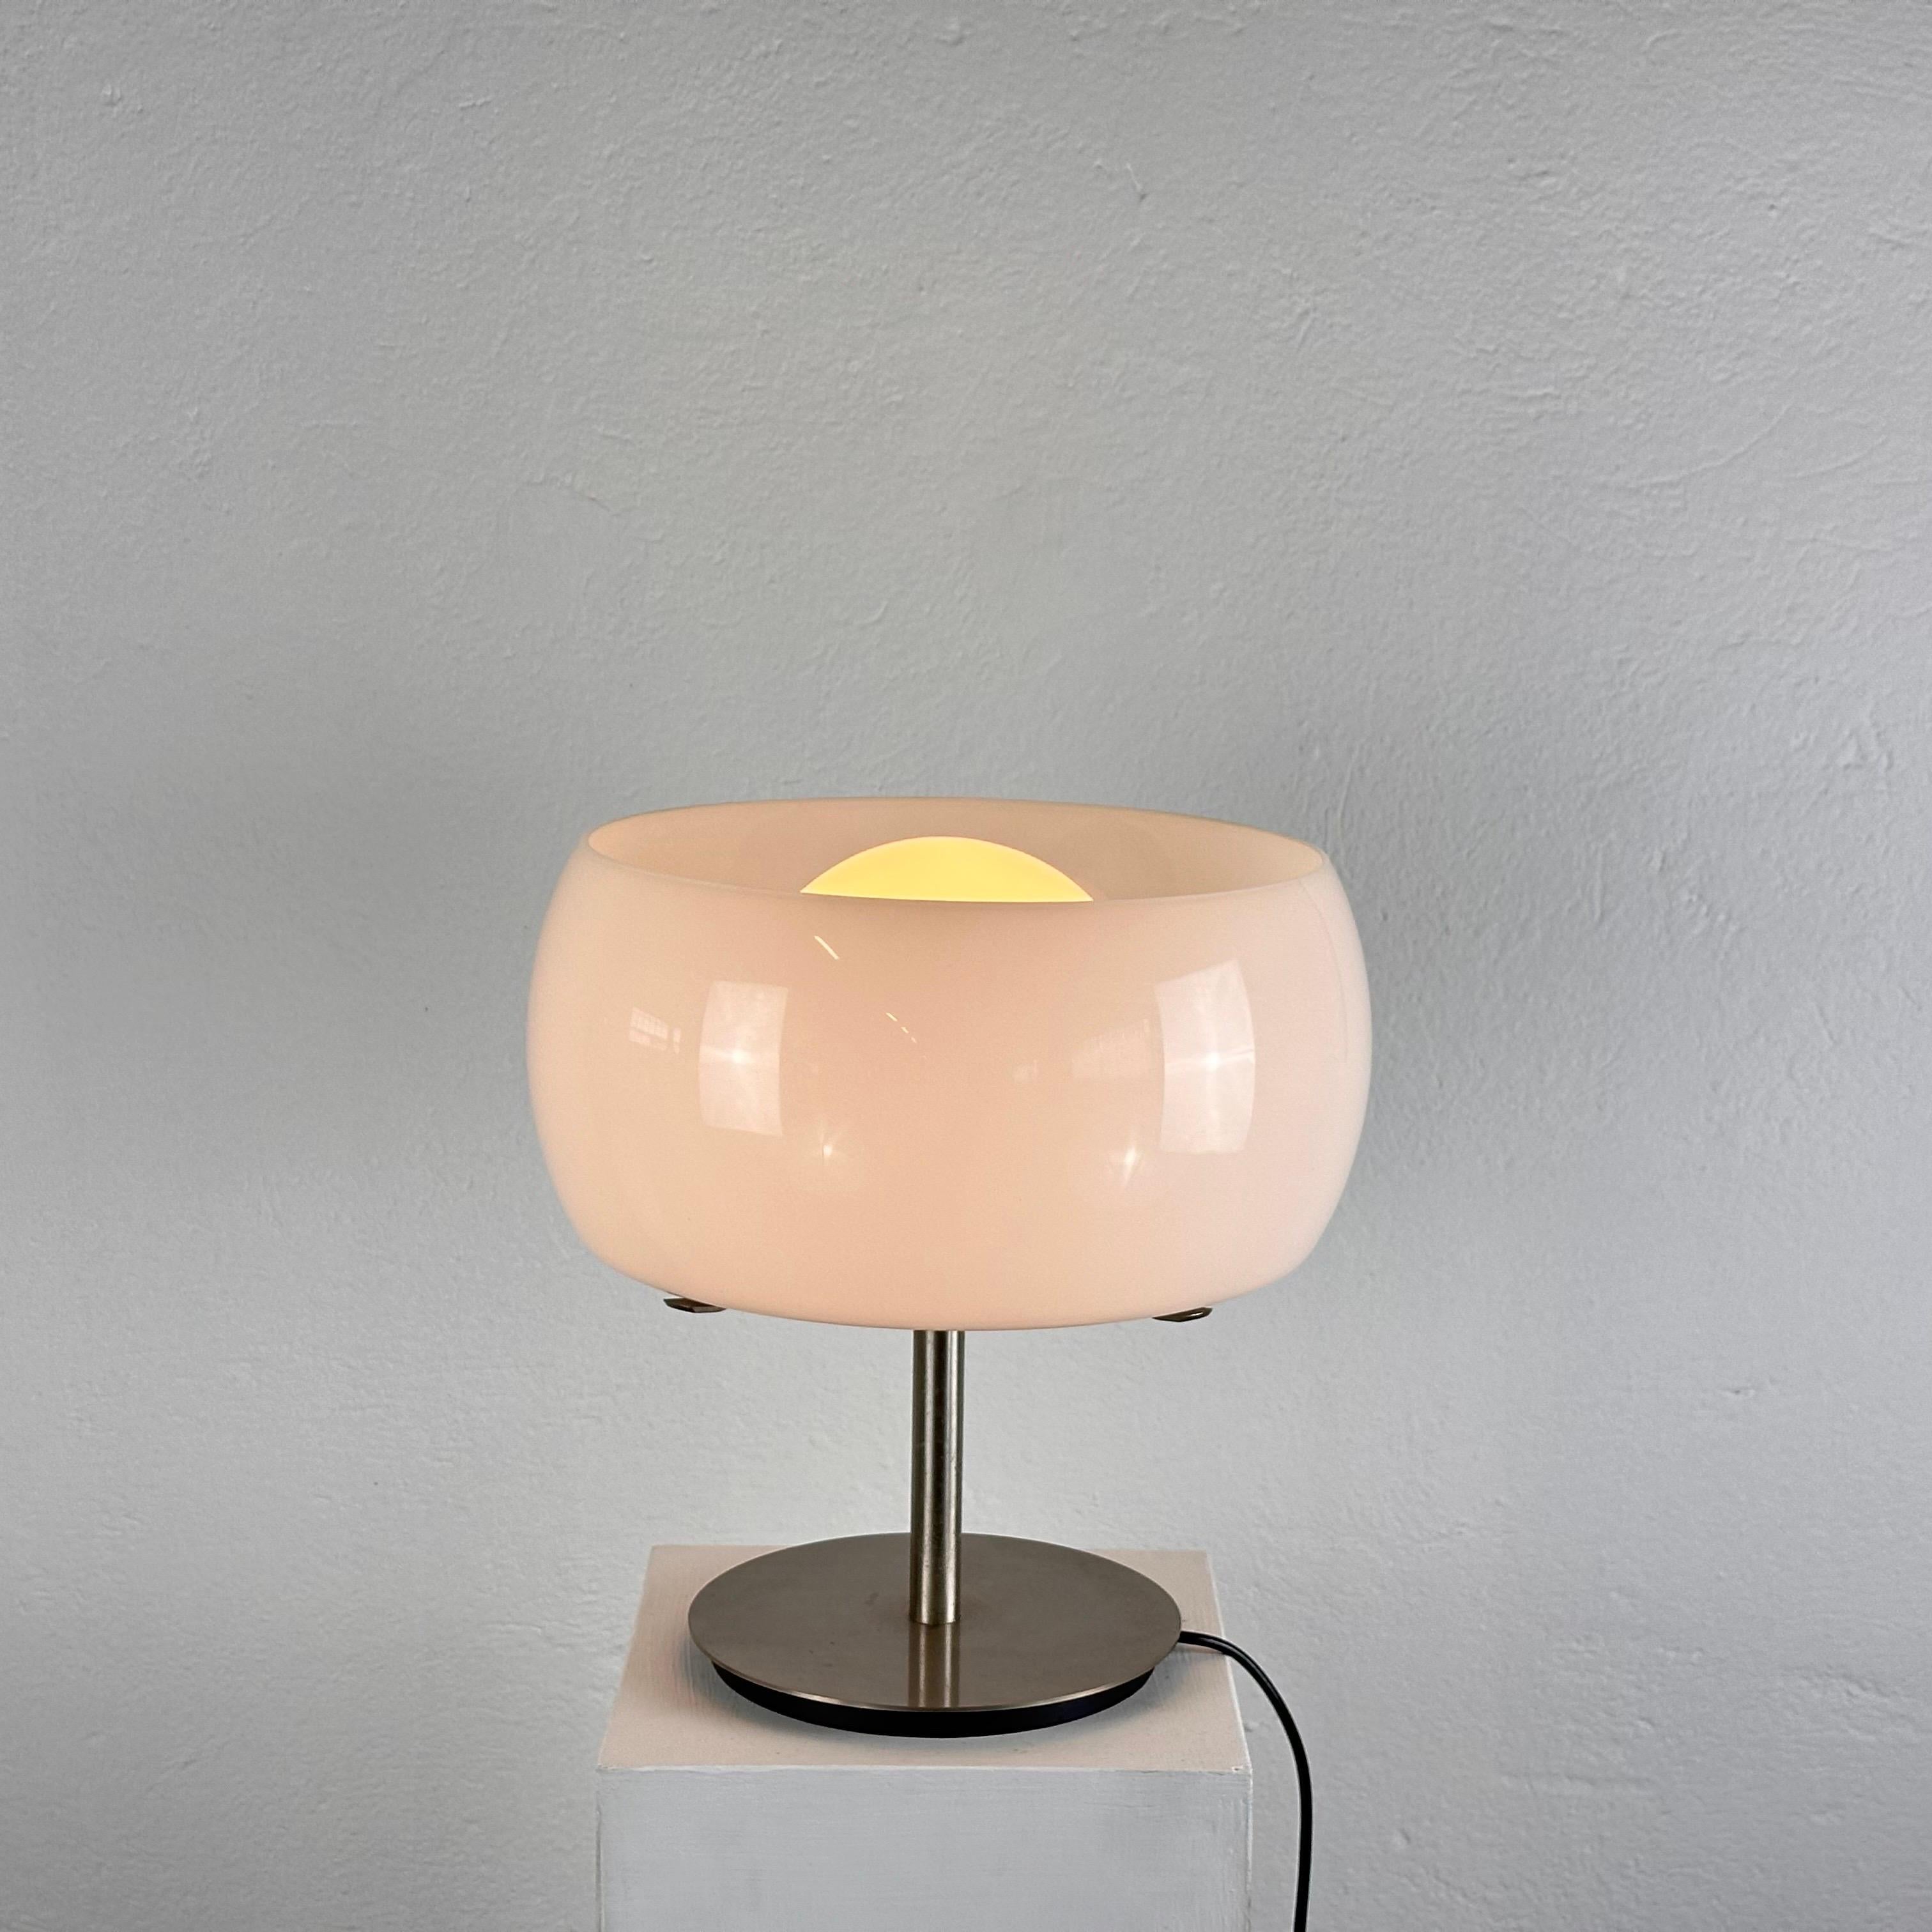 Illuminez votre espace avec une élégance intemporelle et un design raffiné grâce à la lampe de table 'Eleg', un chef-d'œuvre créé par le légendaire Vico Magistretti pour Artemide en 1964. Cette lampe, qui fait partie de la série Omega, illustre la